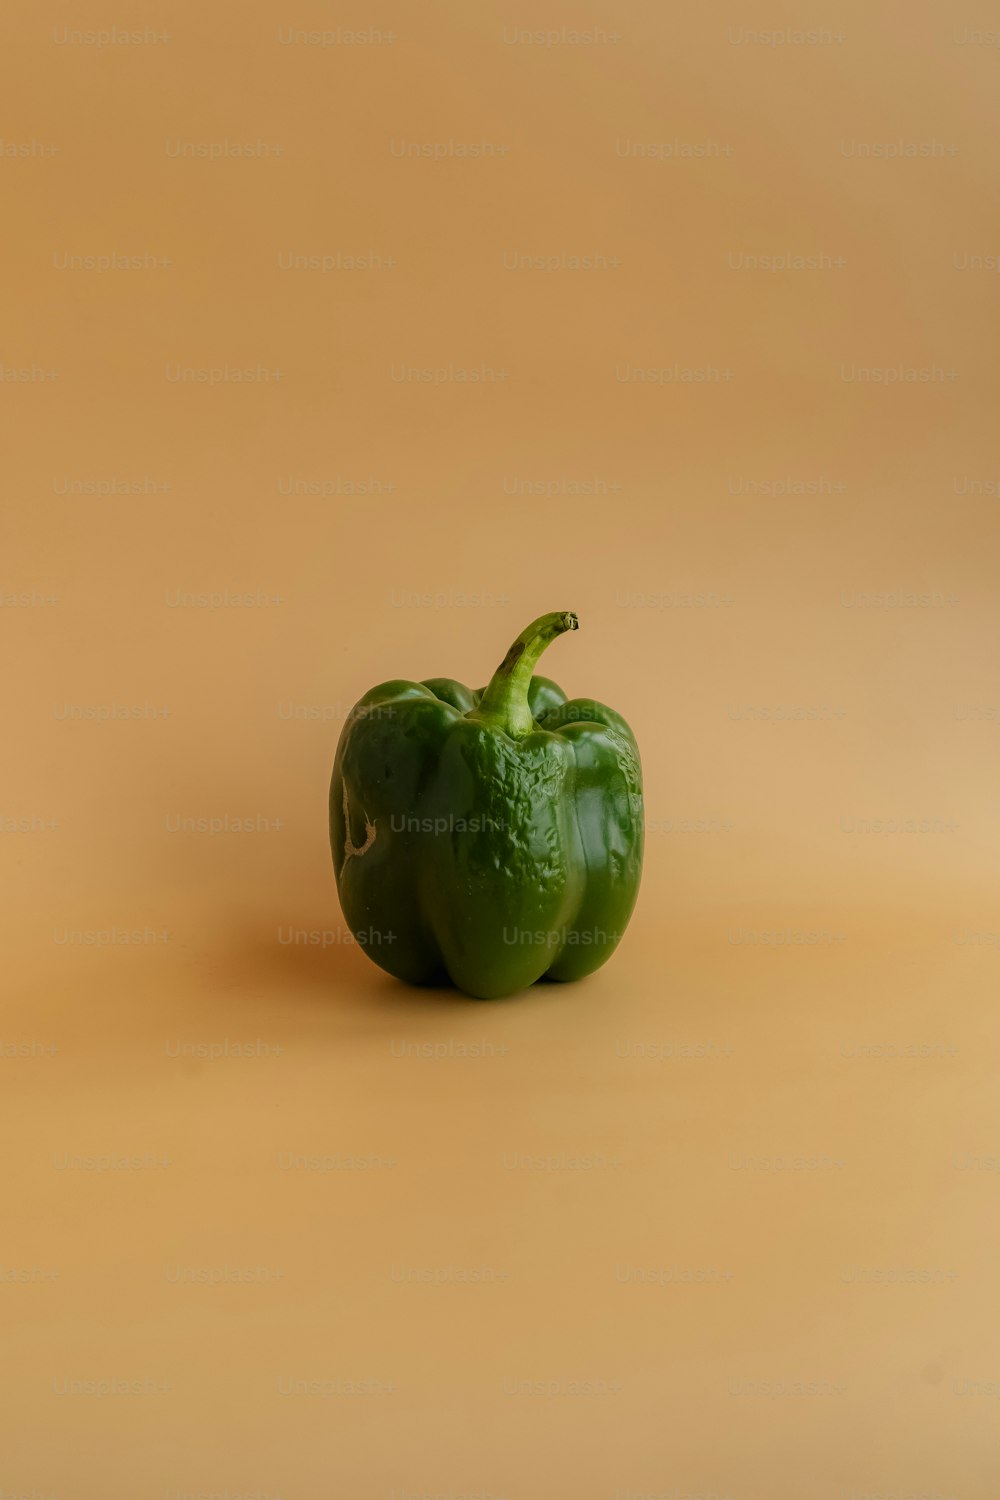 a green bell pepper